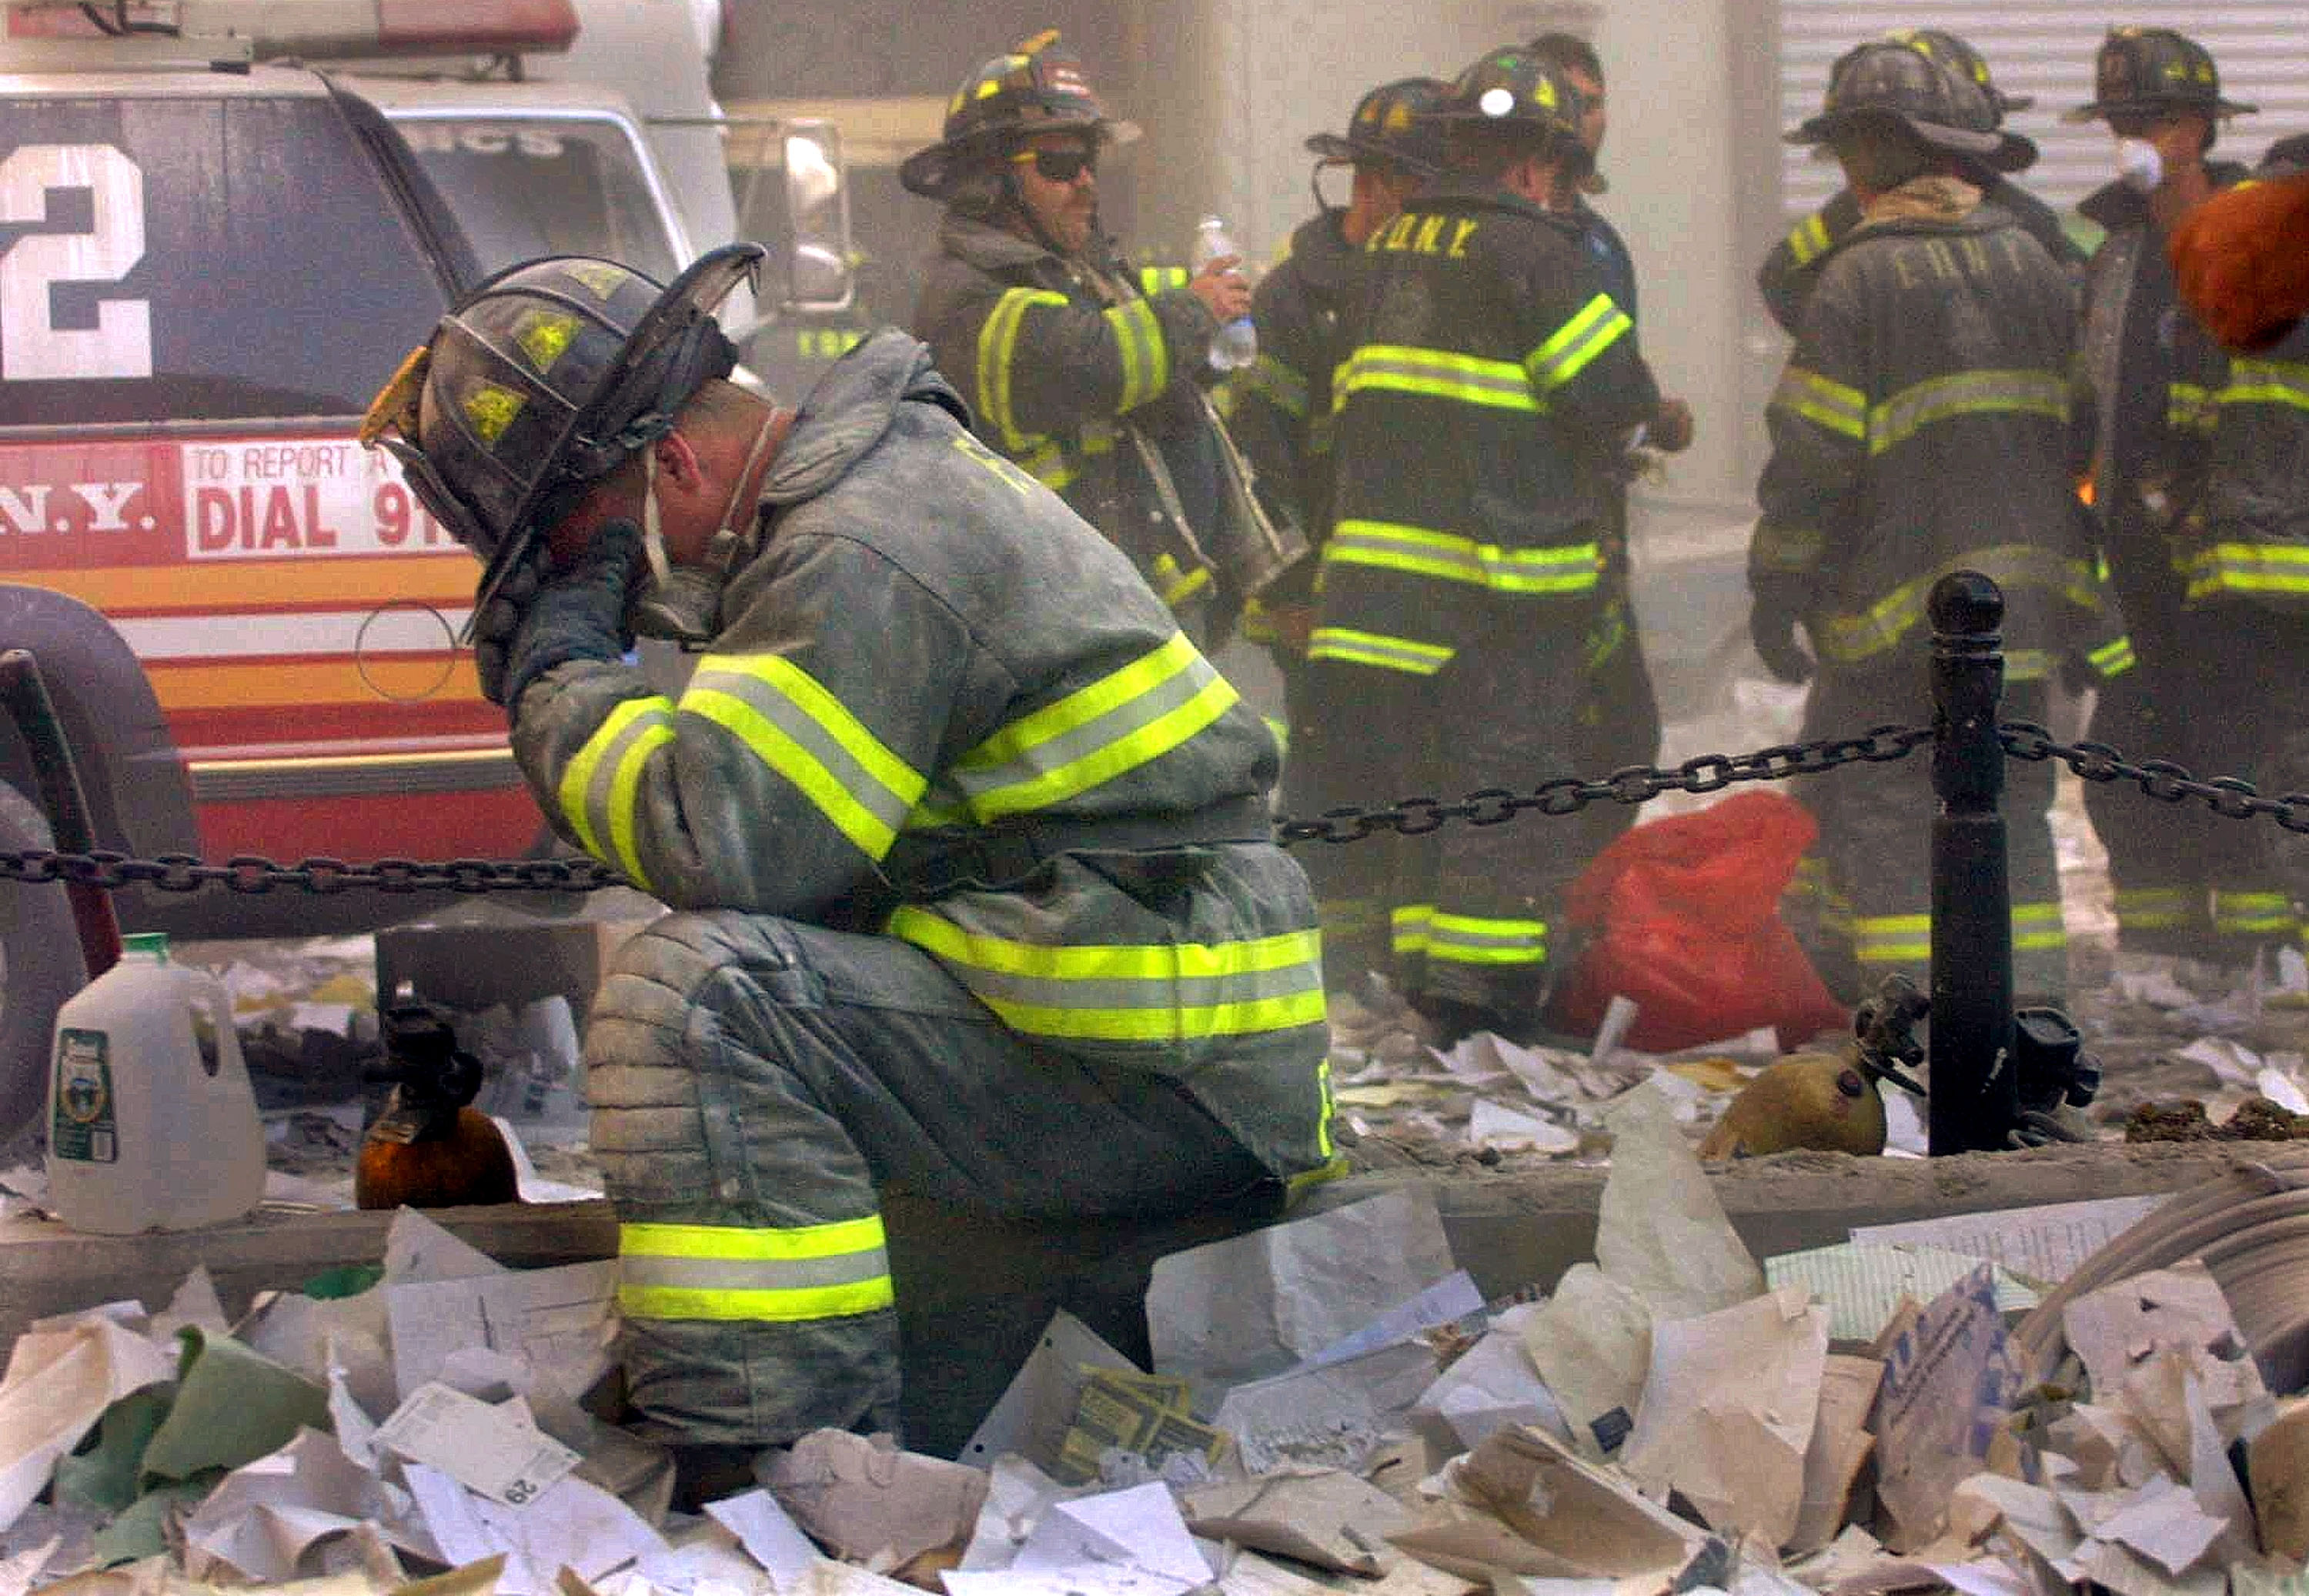 Последние новости о жертвах теракта. Пожарные 11 сентября 2001. Пожарные FDNY 11 сентября. Башни Близнецы 11 сентября жертвы.